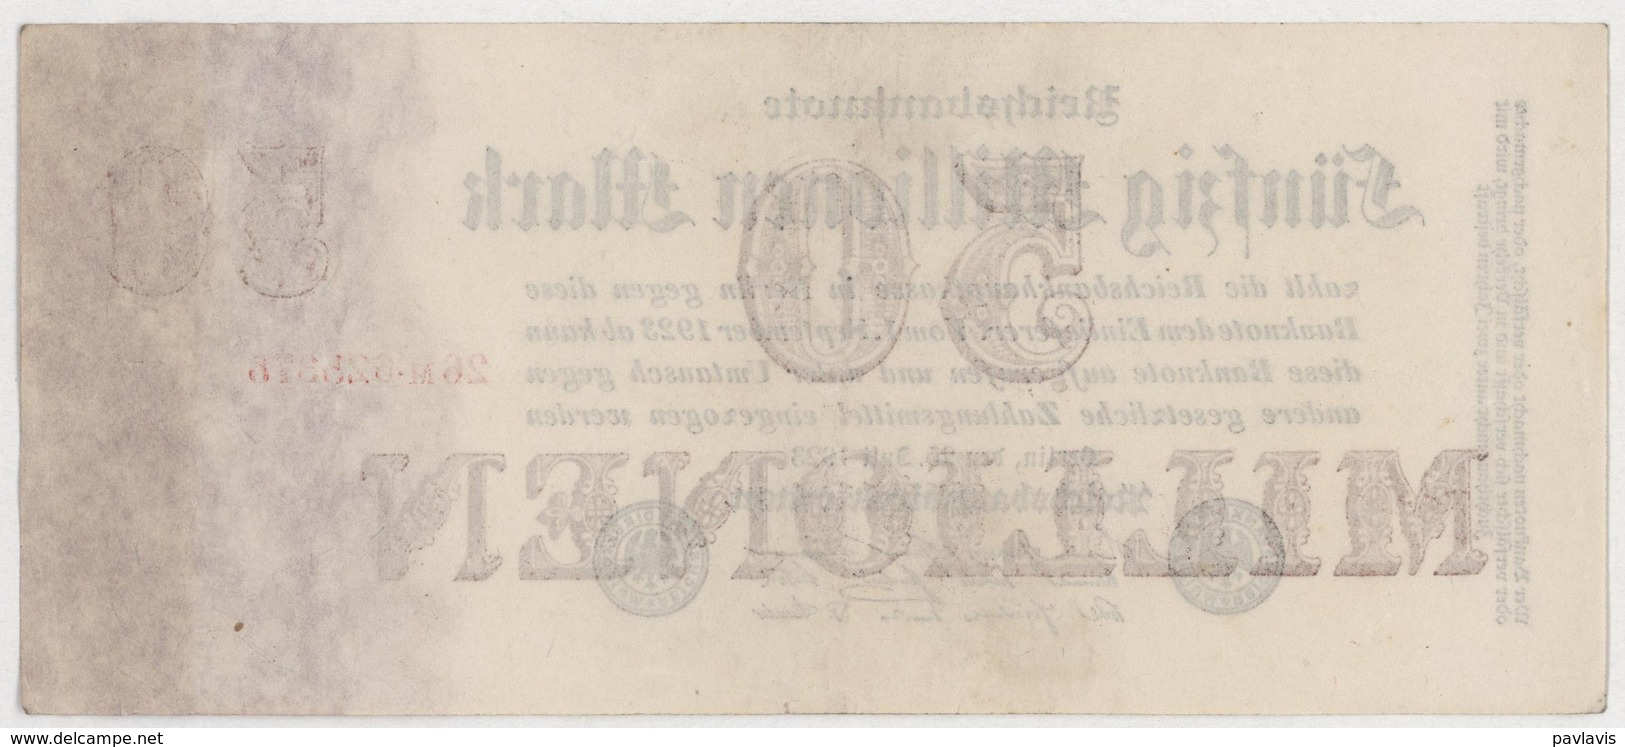 50 Millionen Mark / 50 000 000 Mark - Reichsbanknote - German Reich / Deutsches Reich - Year 1923 - 50 Miljoen Mark